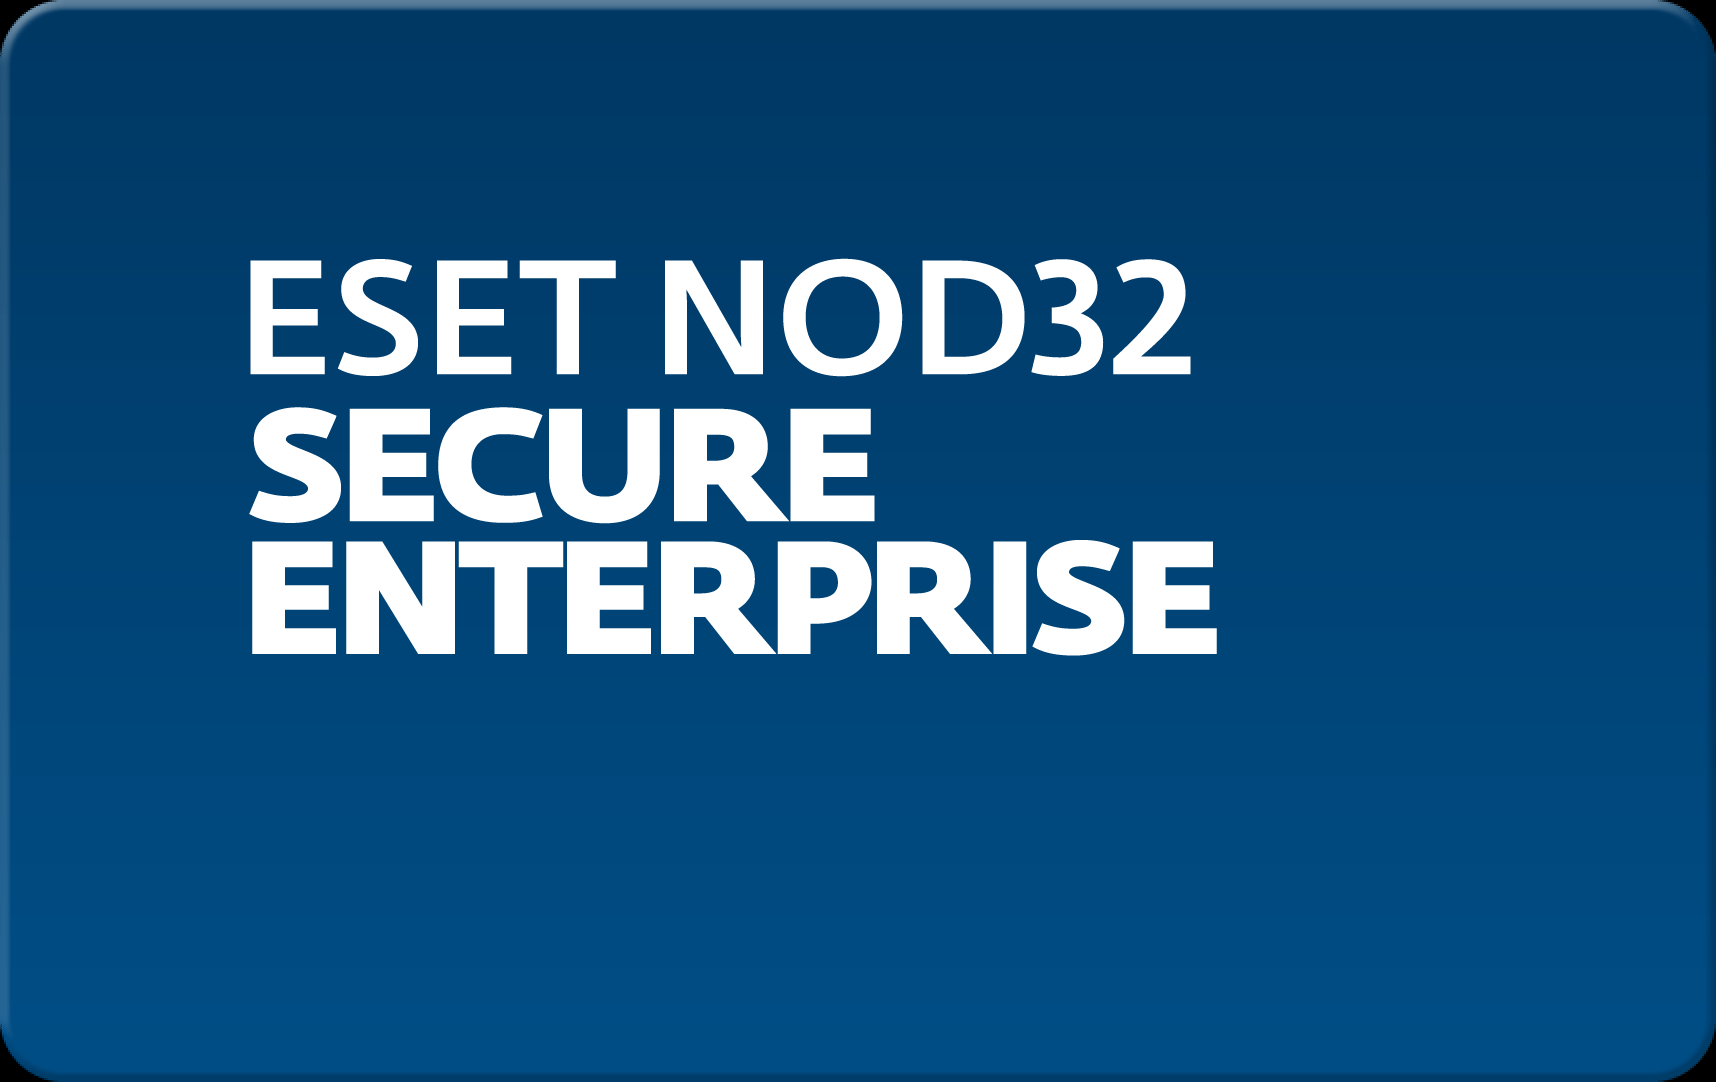        Eset NOD32 Secure Enterprise  154 